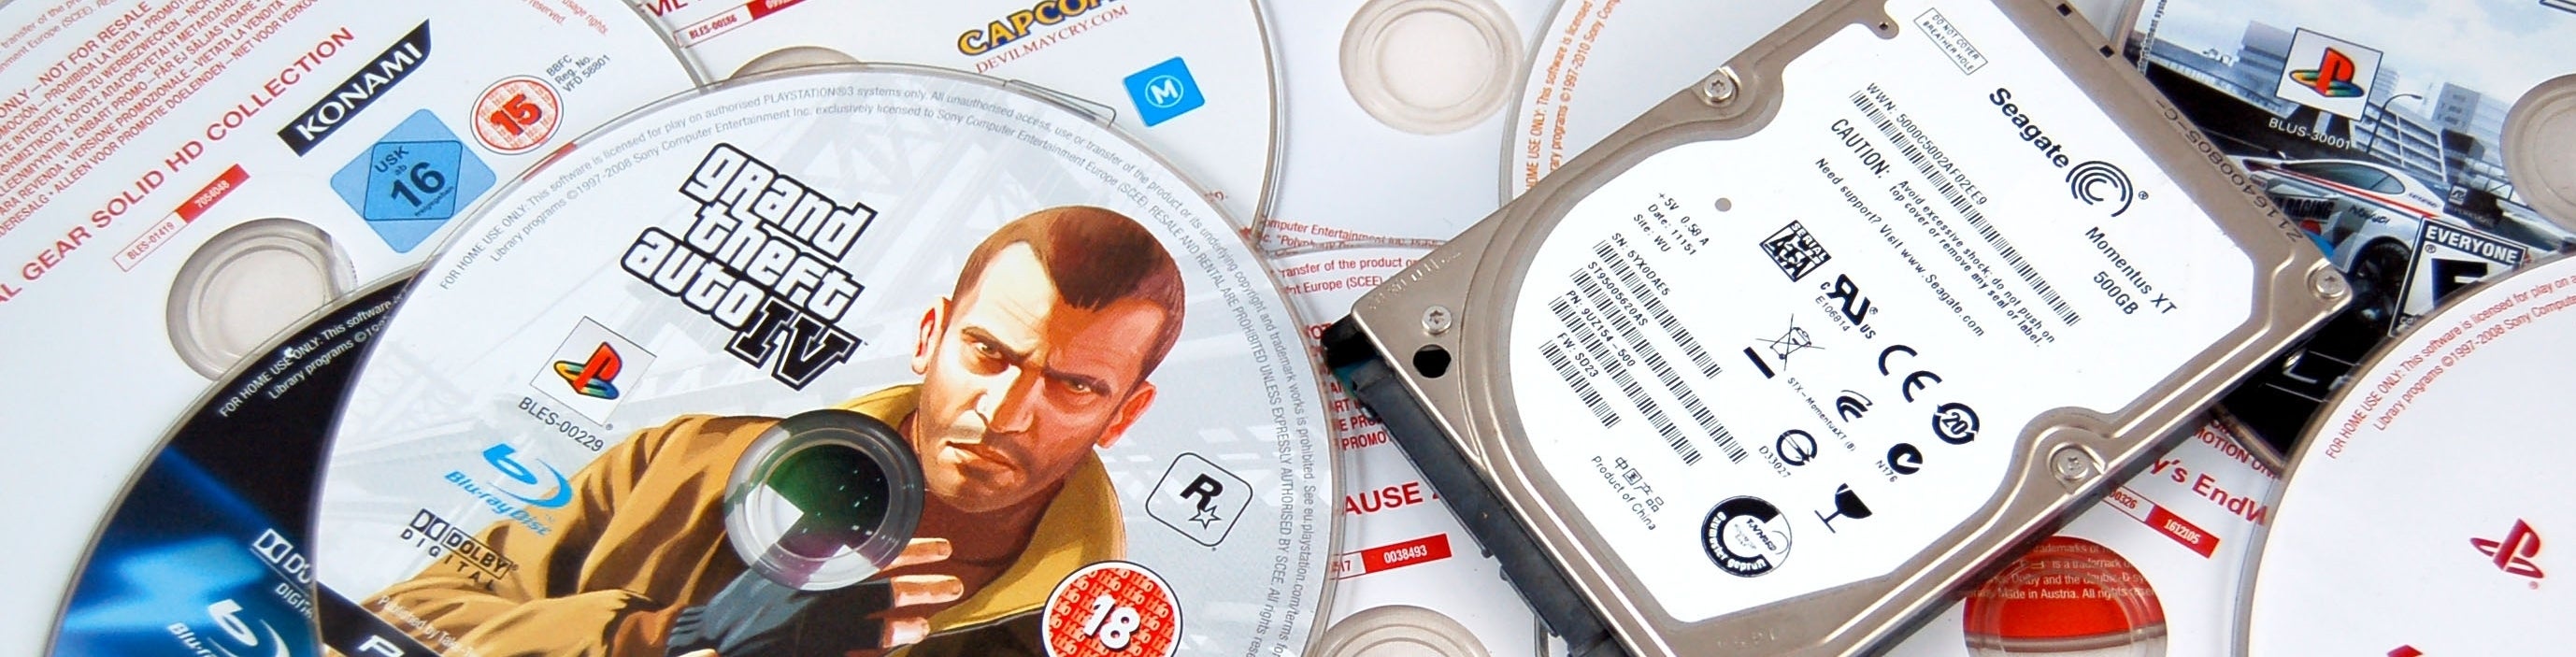 Imagen para PS3: disco vs. descarga